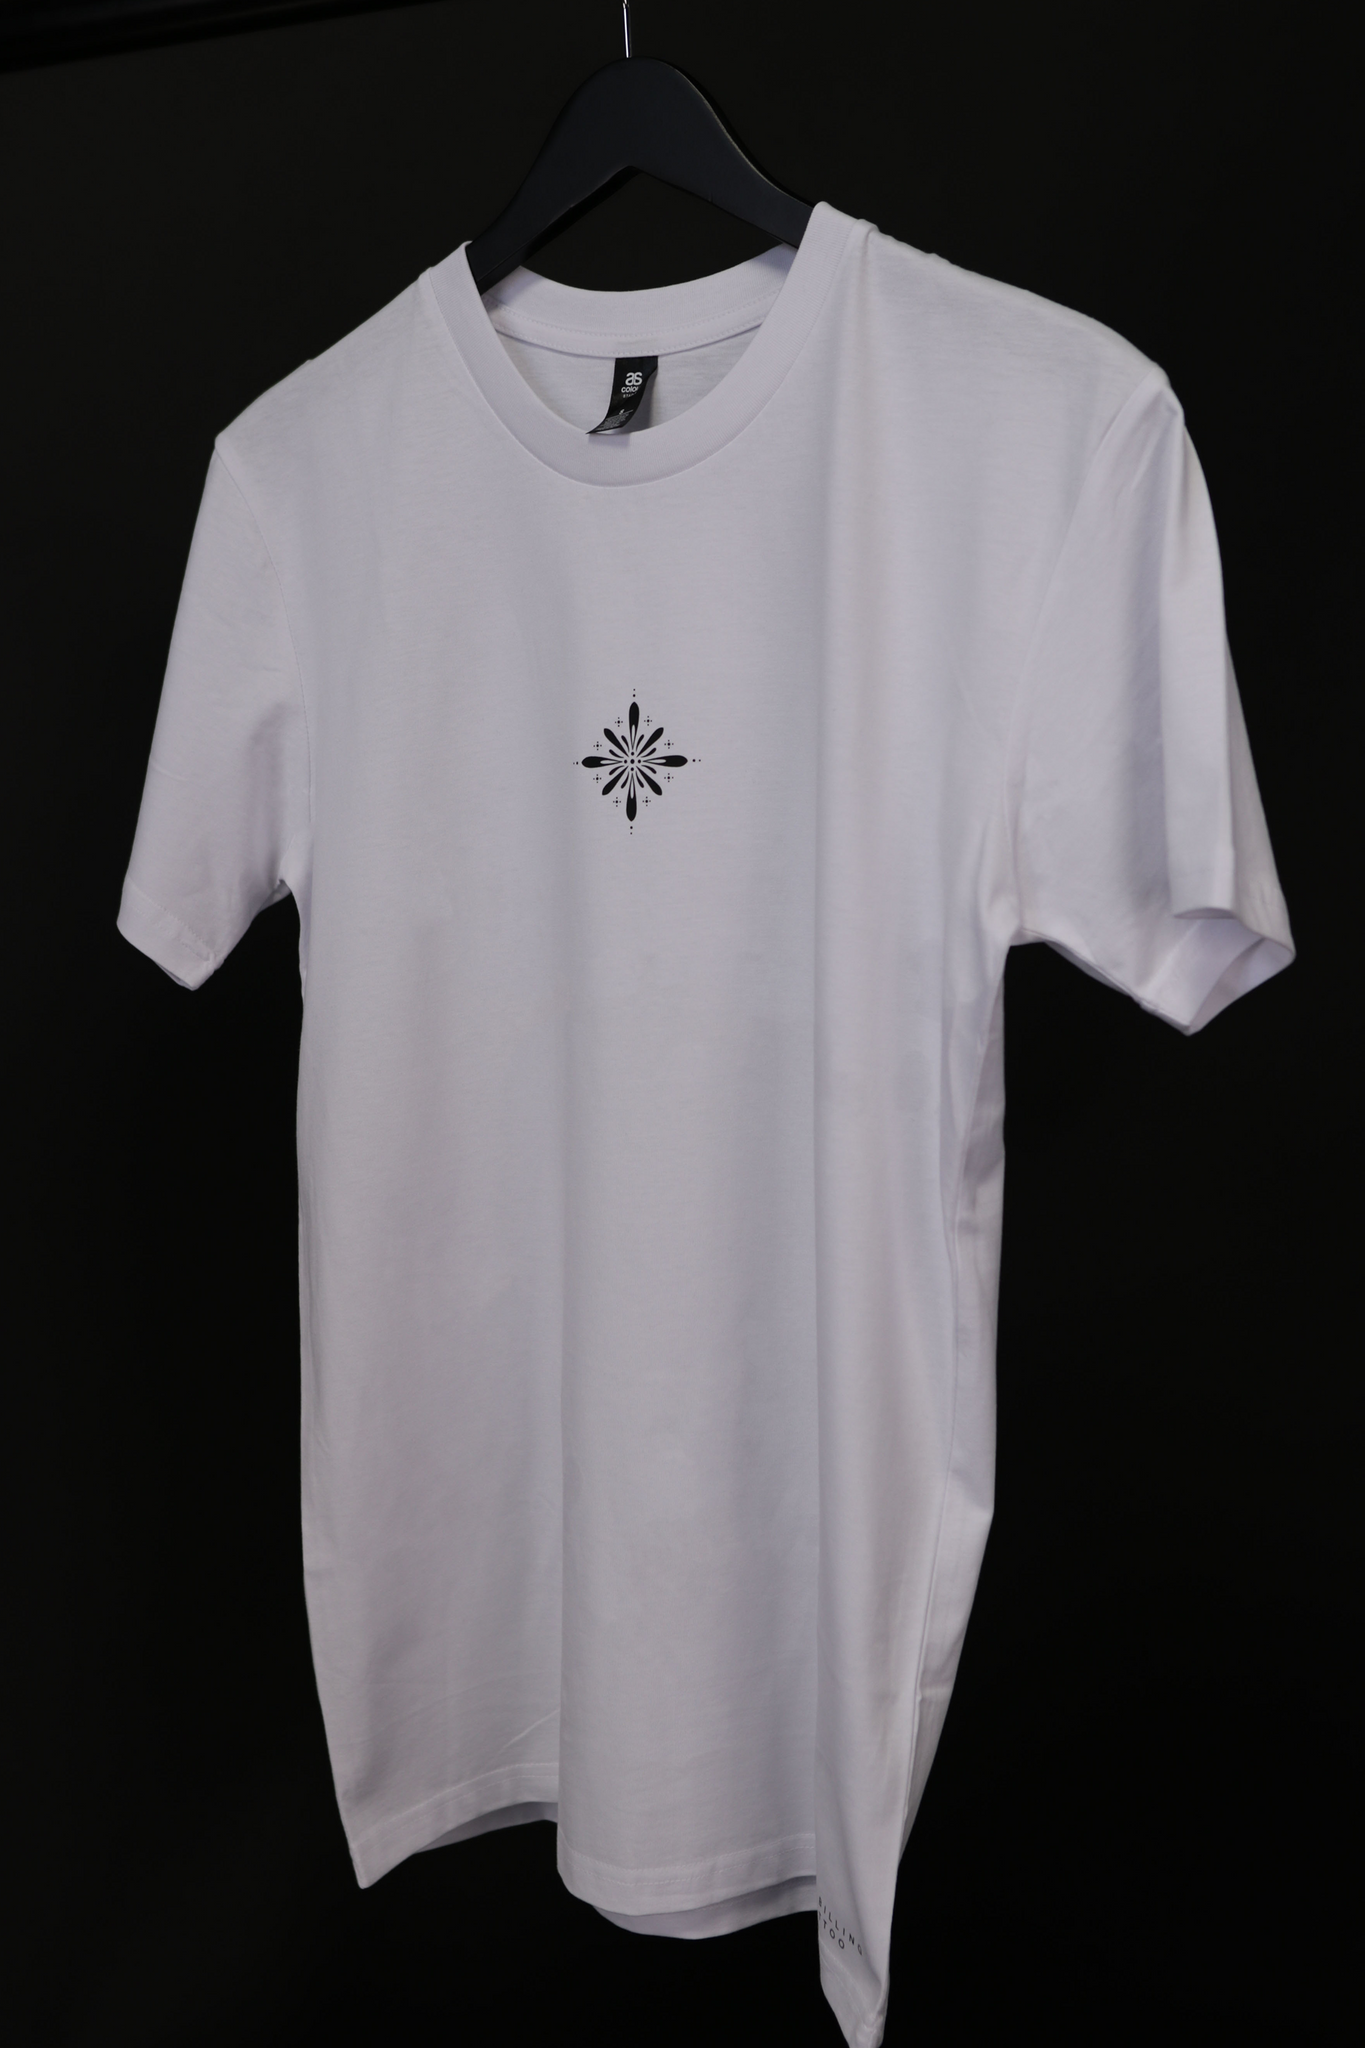 Mandala T-shirt - White